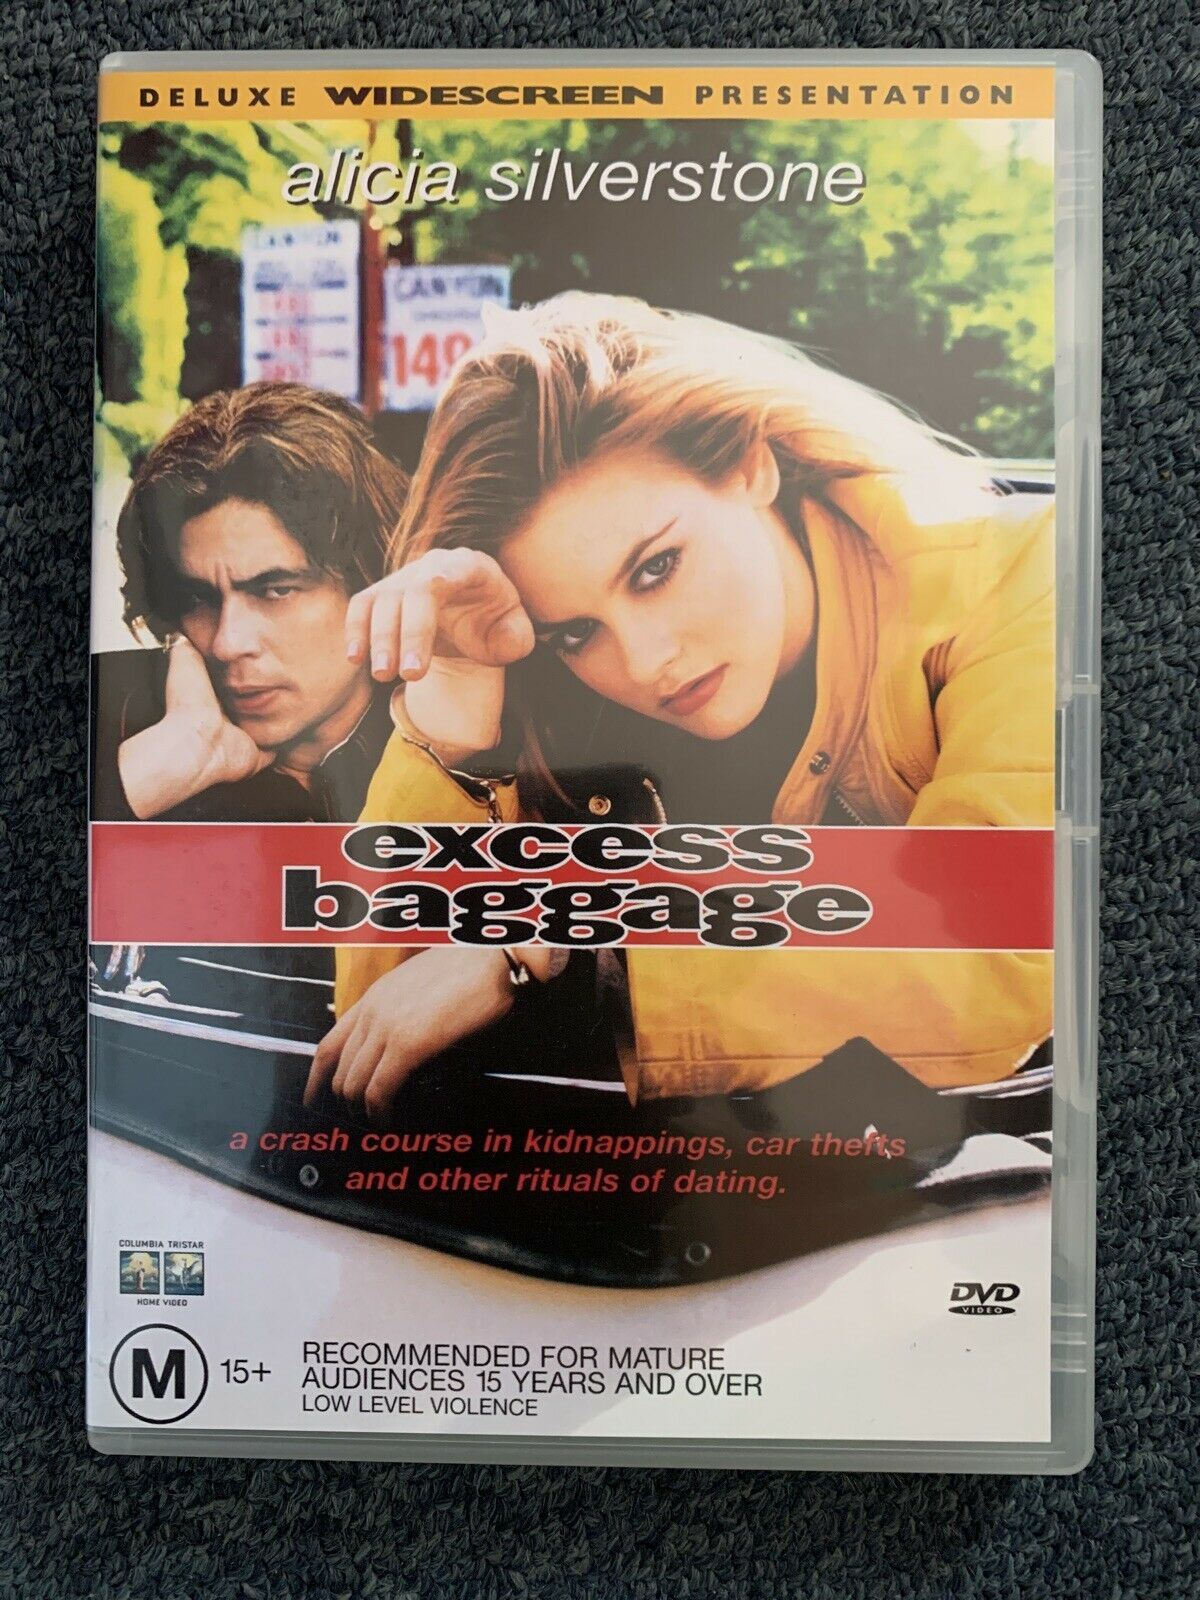 Excess Baggage (DVD, 1997) Alicia Silverstone, Benicio Del Toro - Region 4